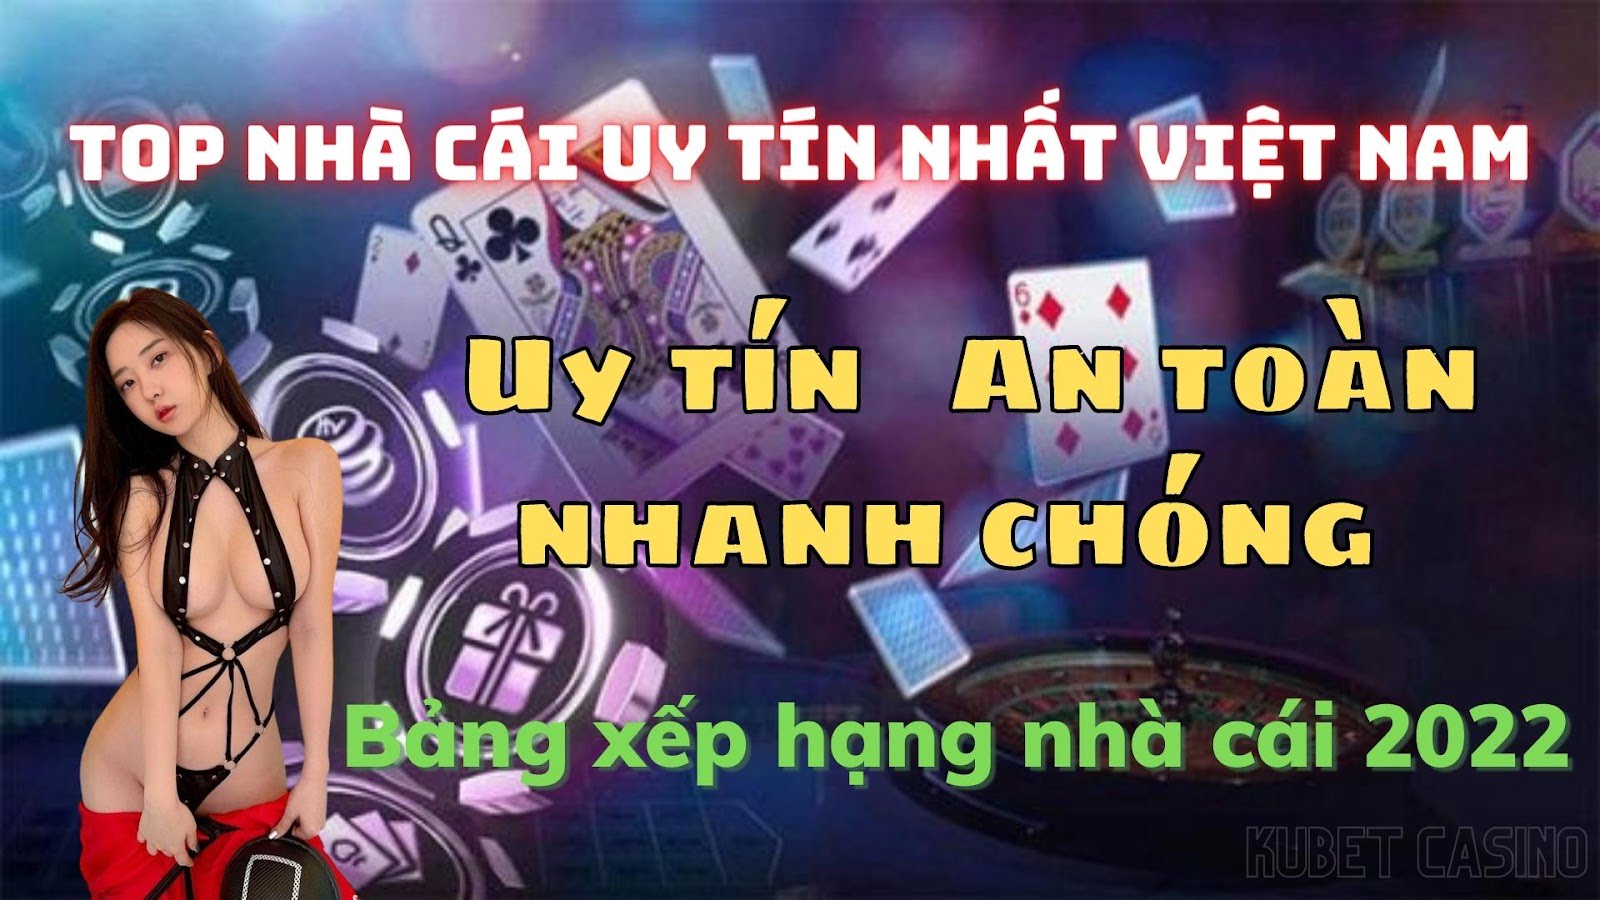 Top nhà cái uy tín nhất Việt Nam